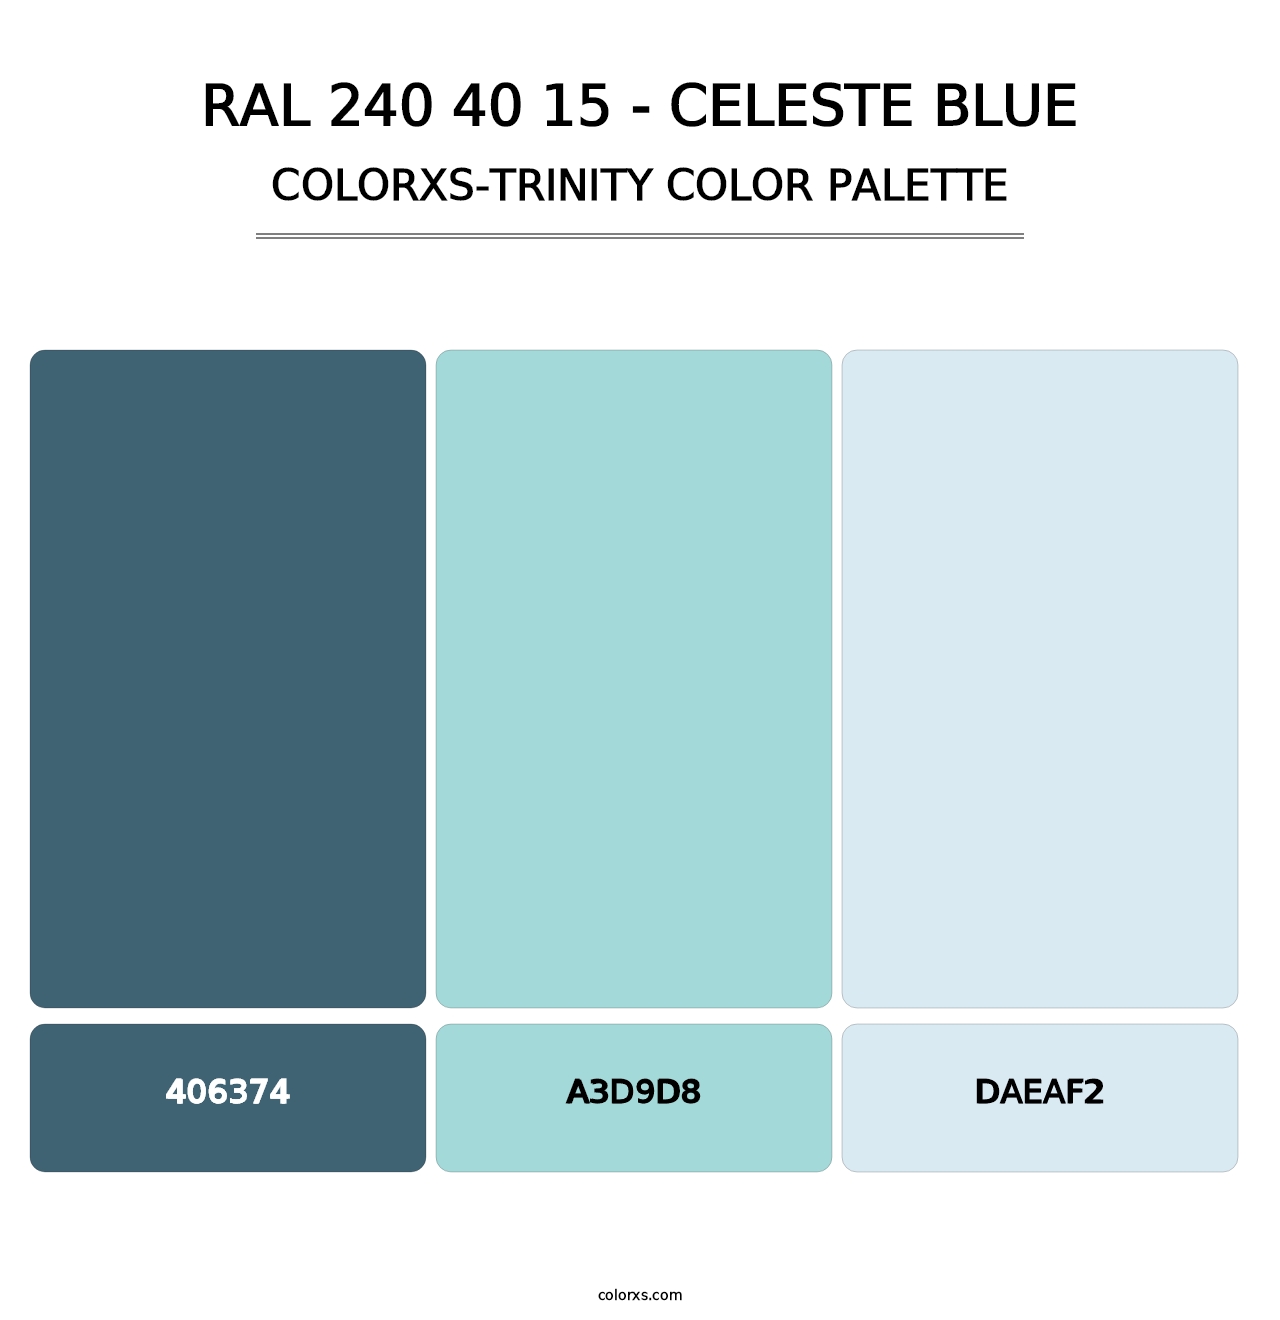 RAL 240 40 15 - Celeste Blue - Colorxs Trinity Palette